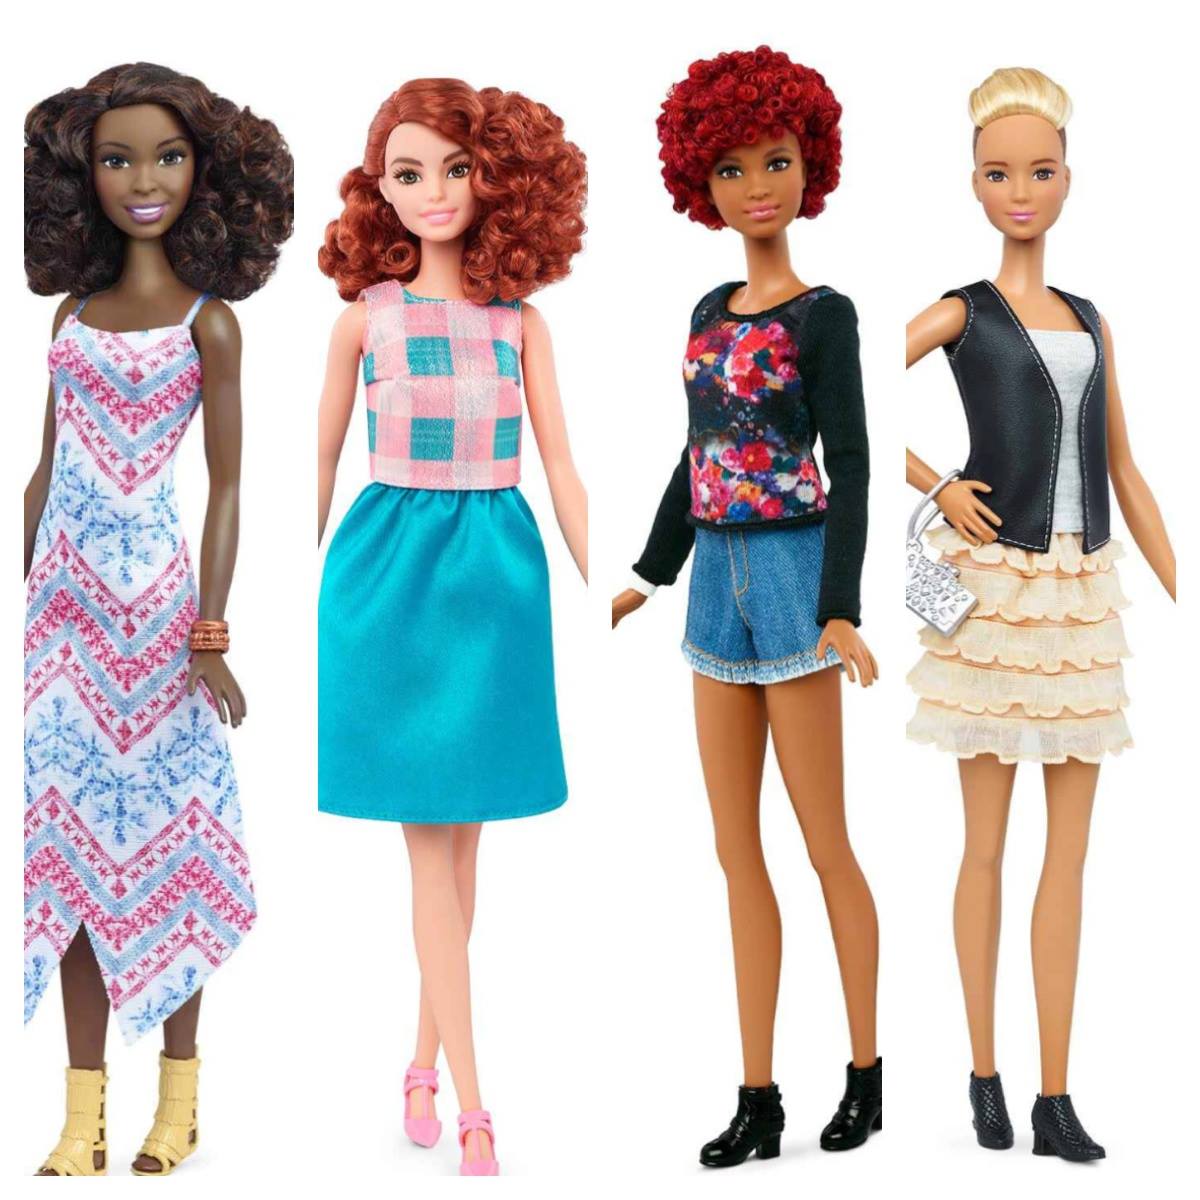 New barbie Fashionista dolls